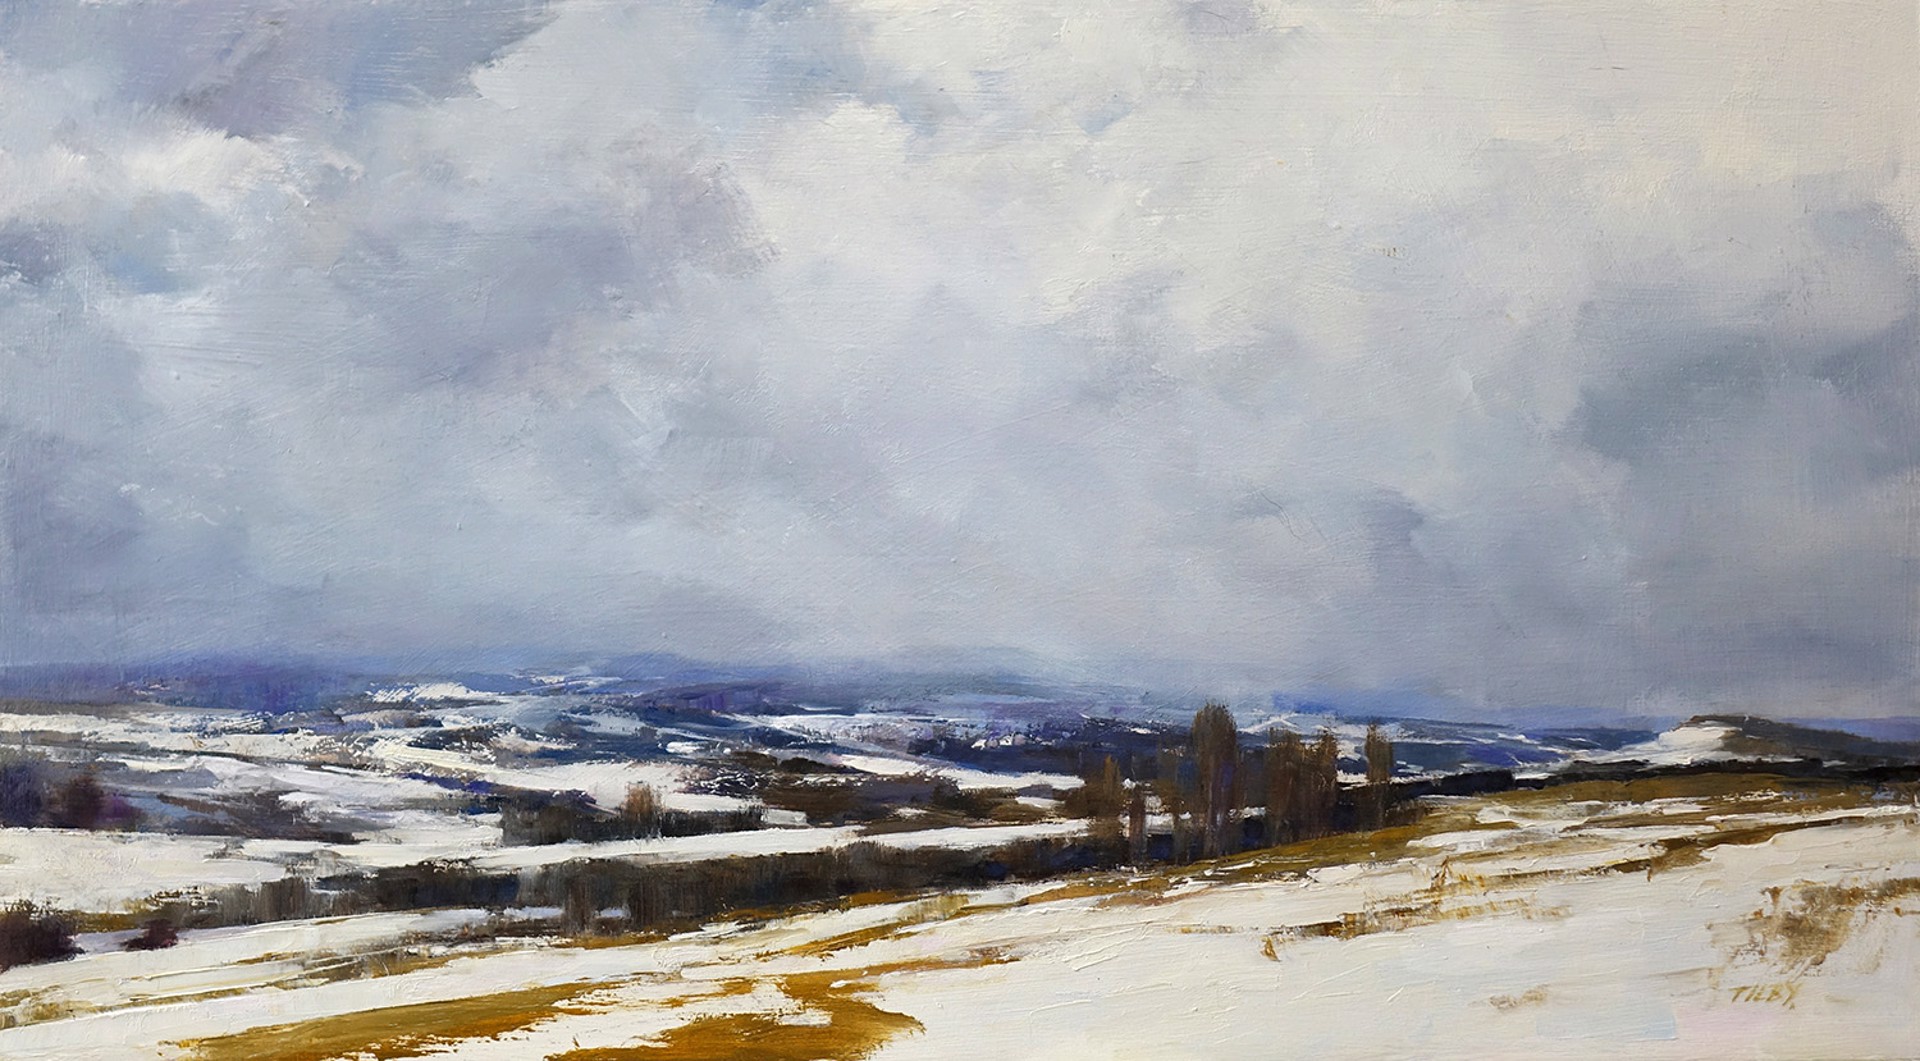 Tilby, Deborah - "Snow Clouds" by NOAPS